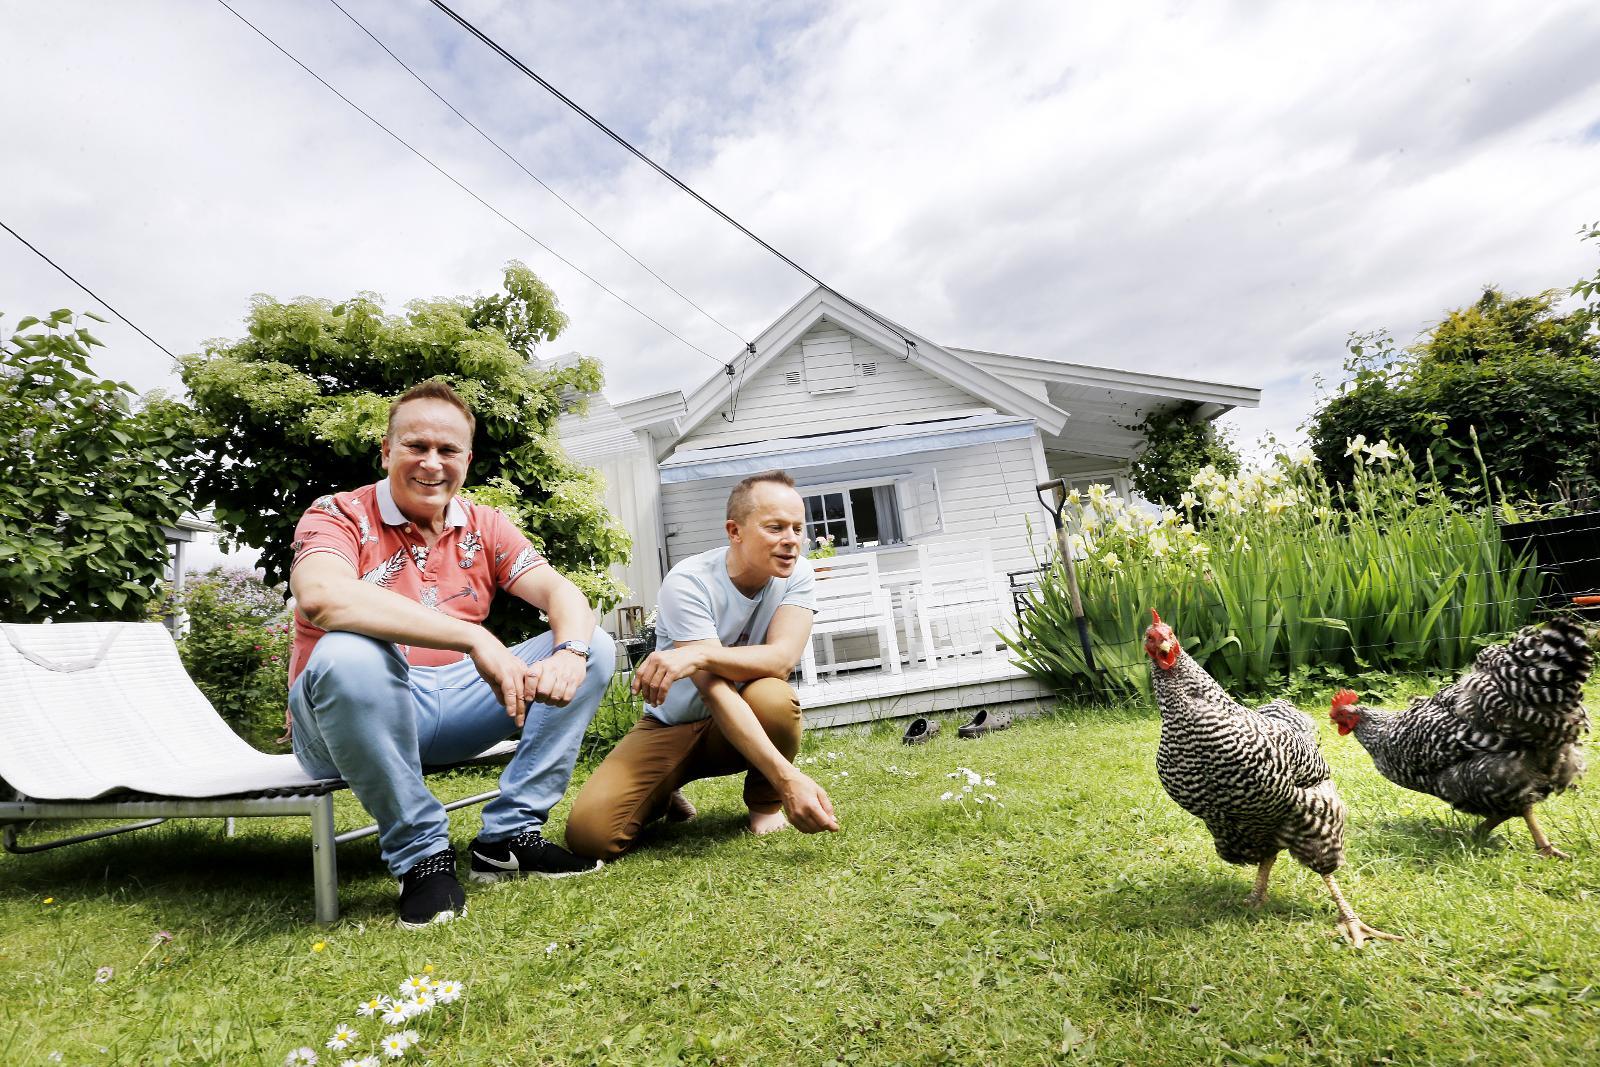 HØNER I HAGEN: I løpet av sine åtte år som kolonister har Tom Ovlien og Arne-Harald Hanssen skapt en hageidyll med blomsterprakt, tre høner og en liten dam med karper.